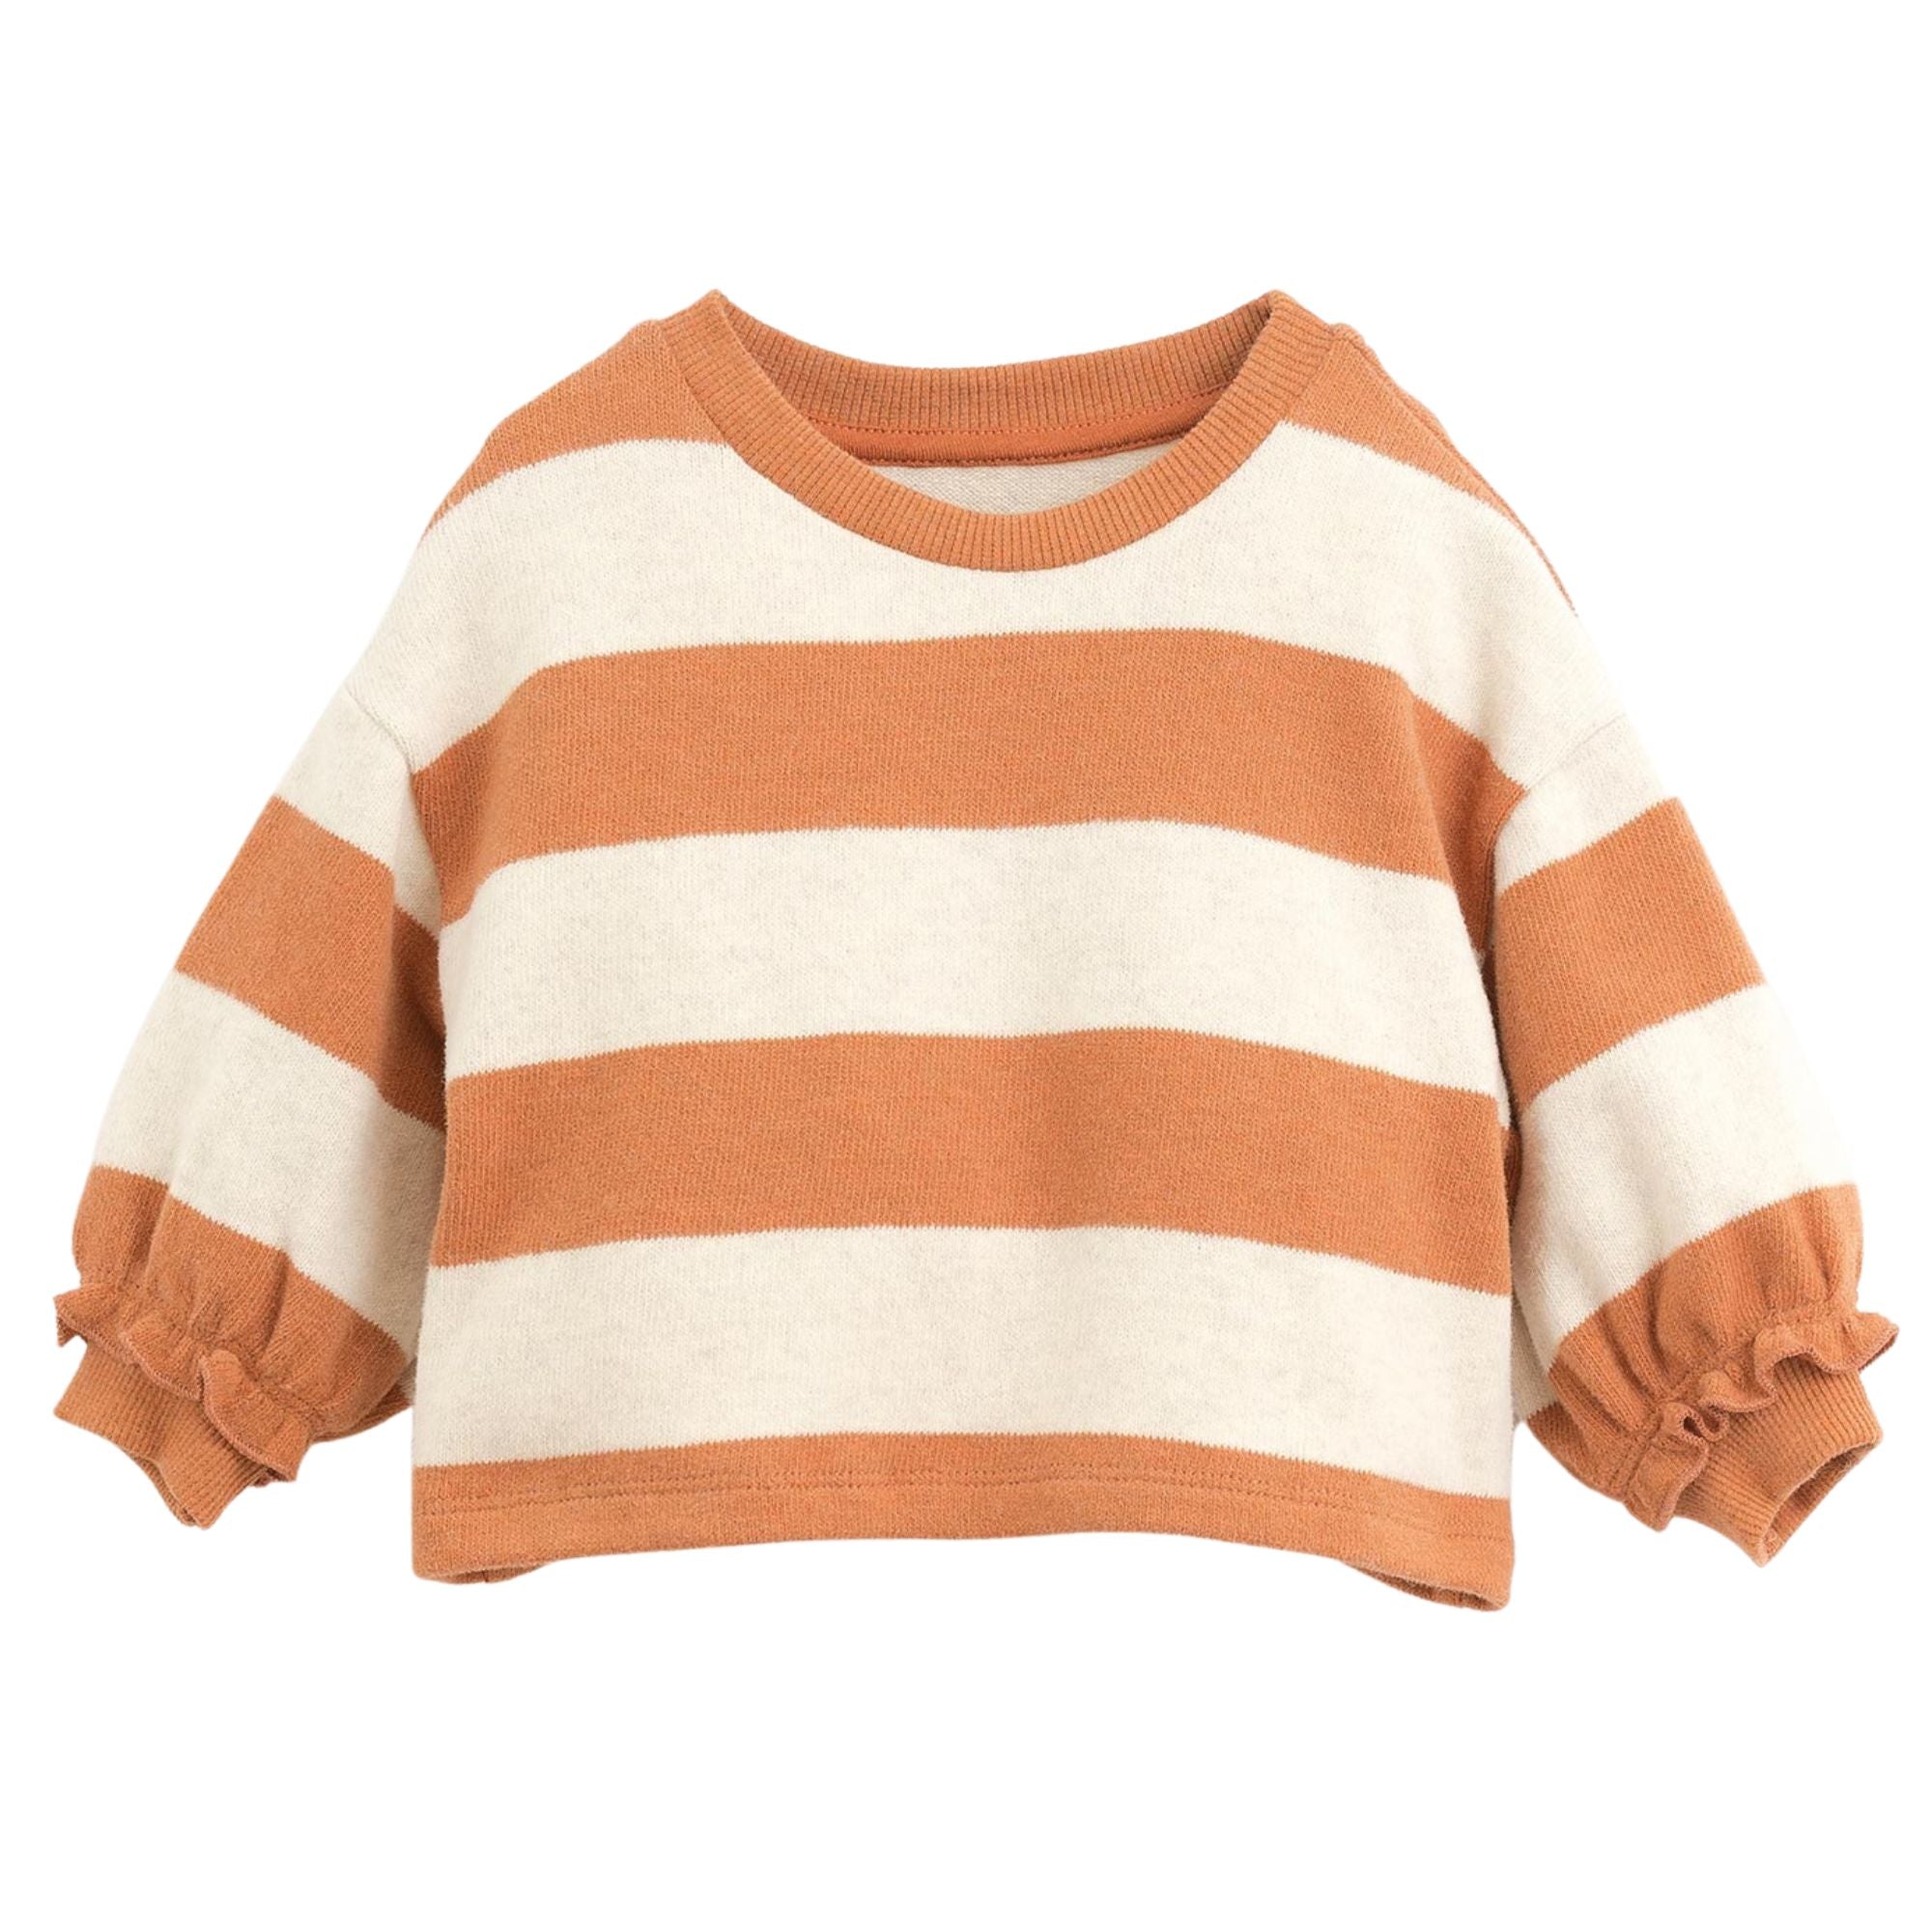 maglione-a-righe-colore-arancione-maniche-a-sbuffo